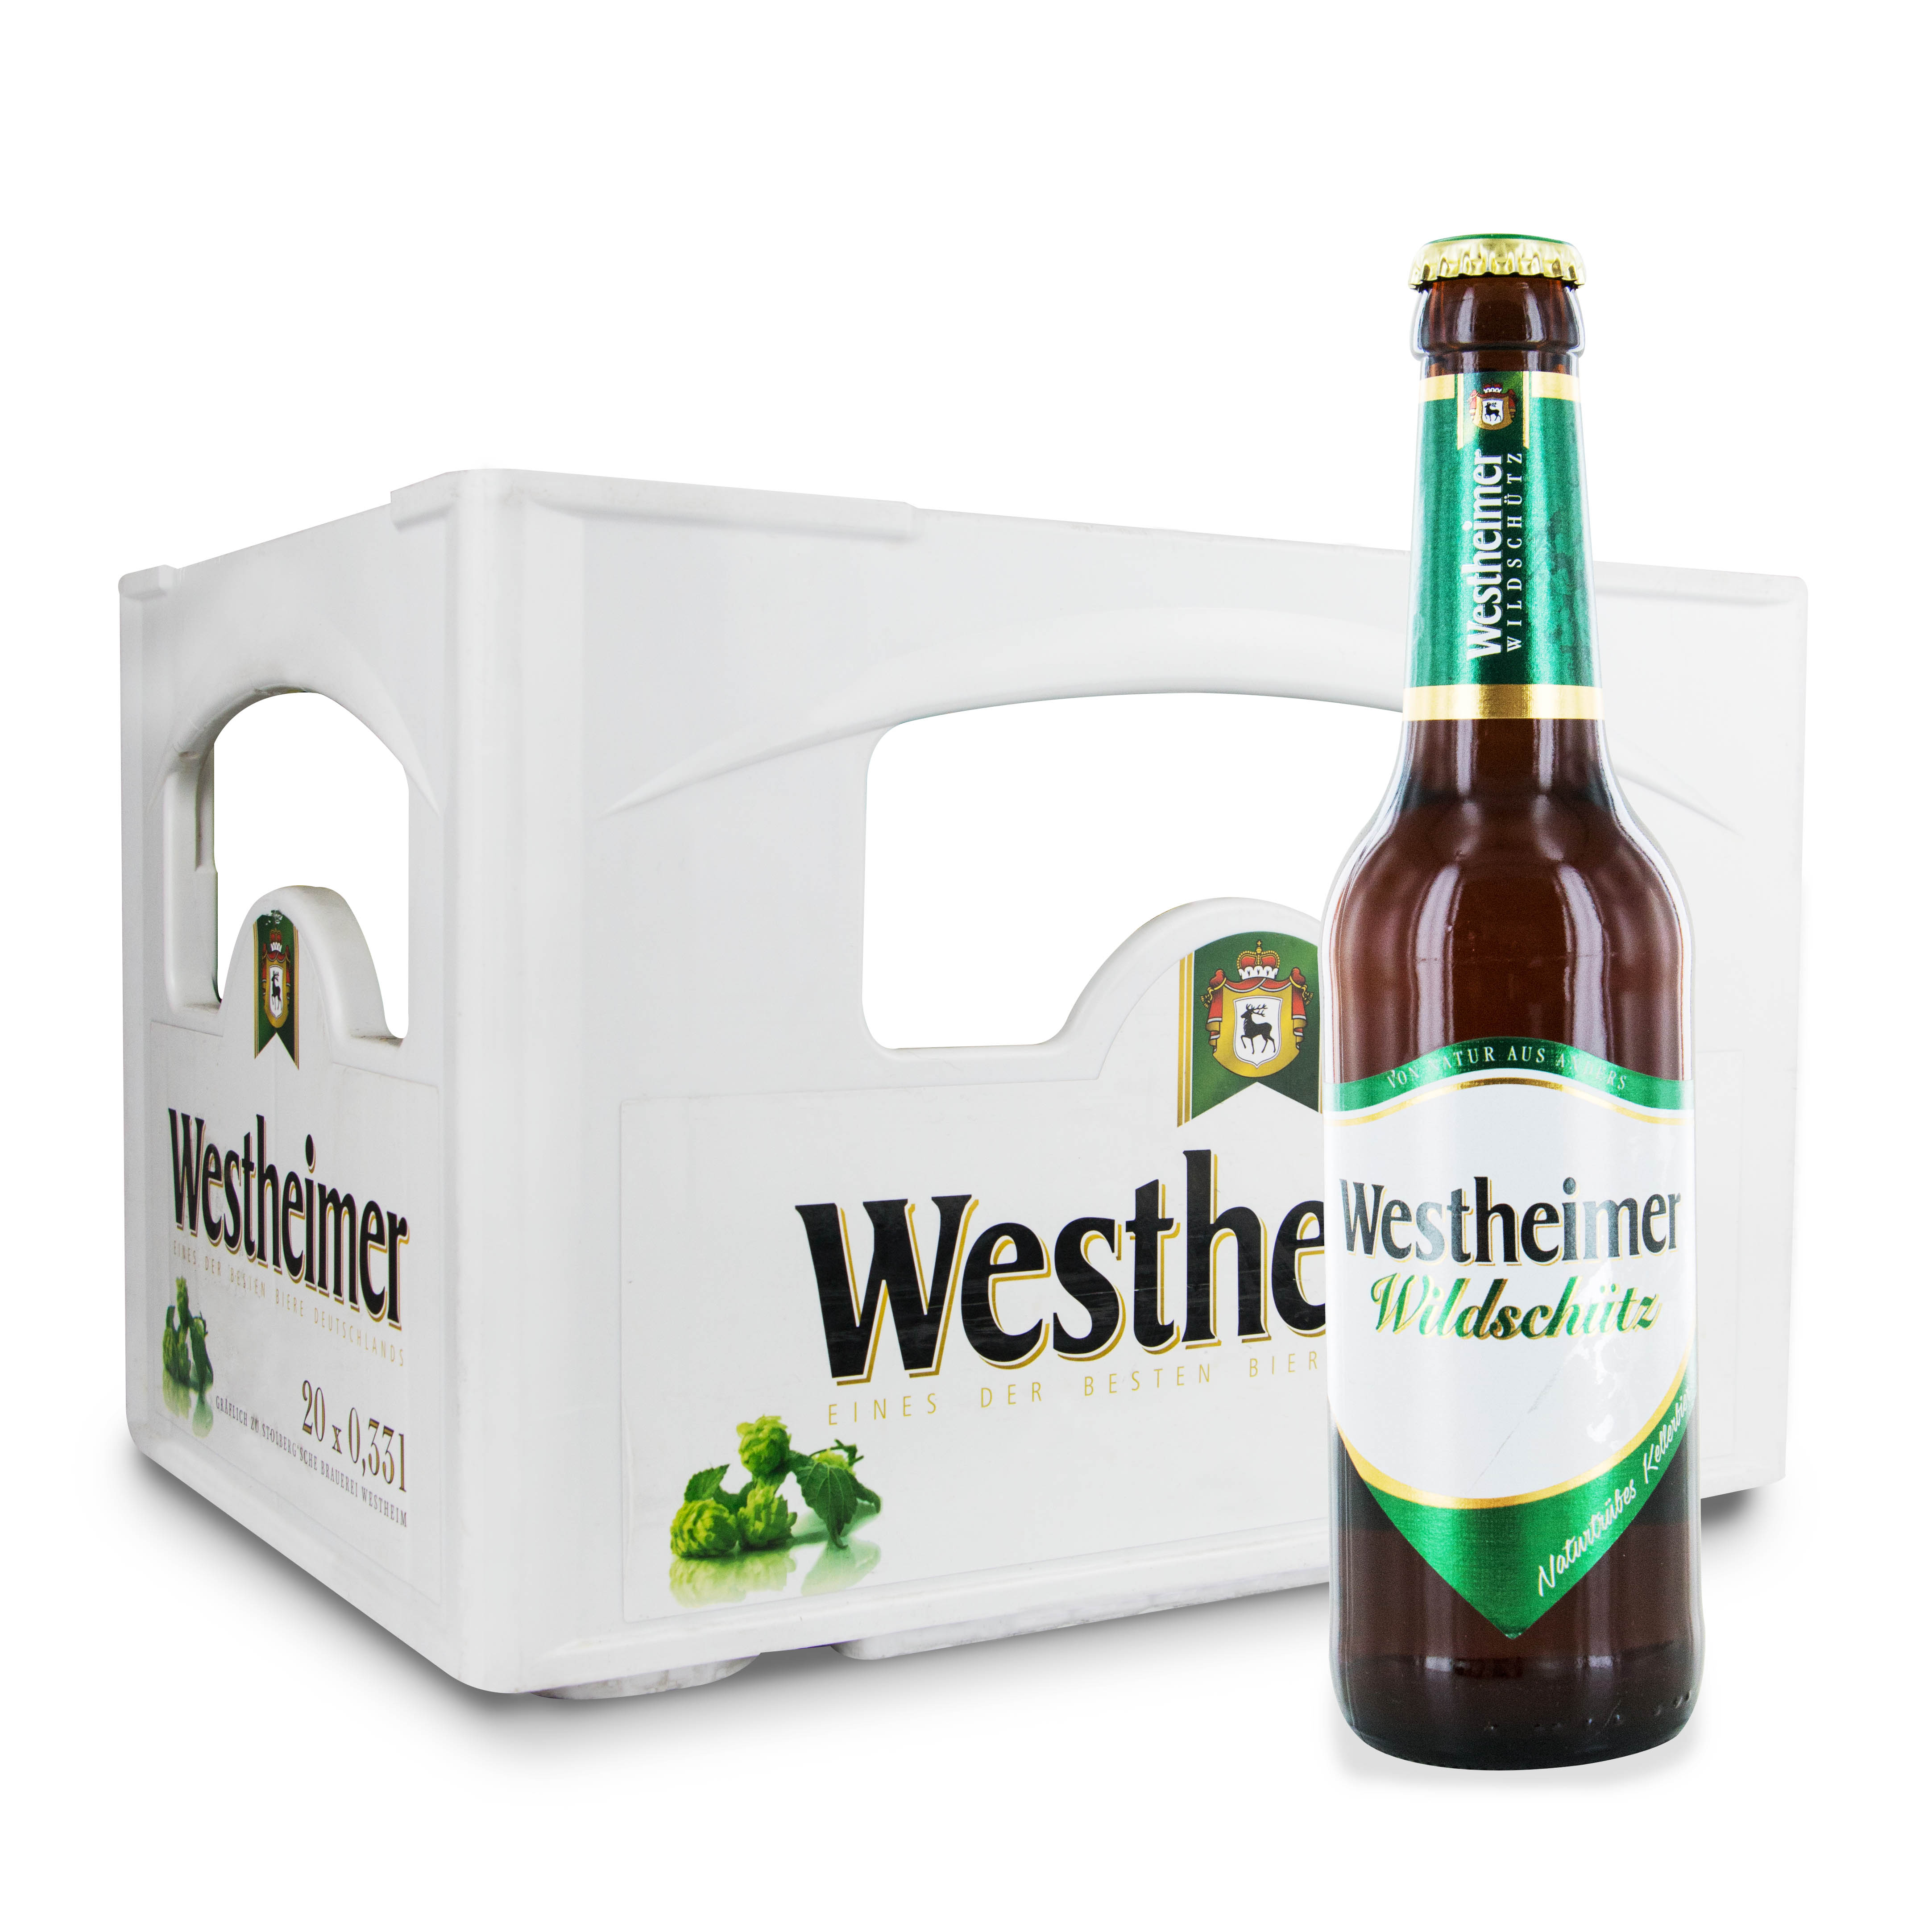 Westheimer Wildschütz Bier in der Kiste-zoom-mobil